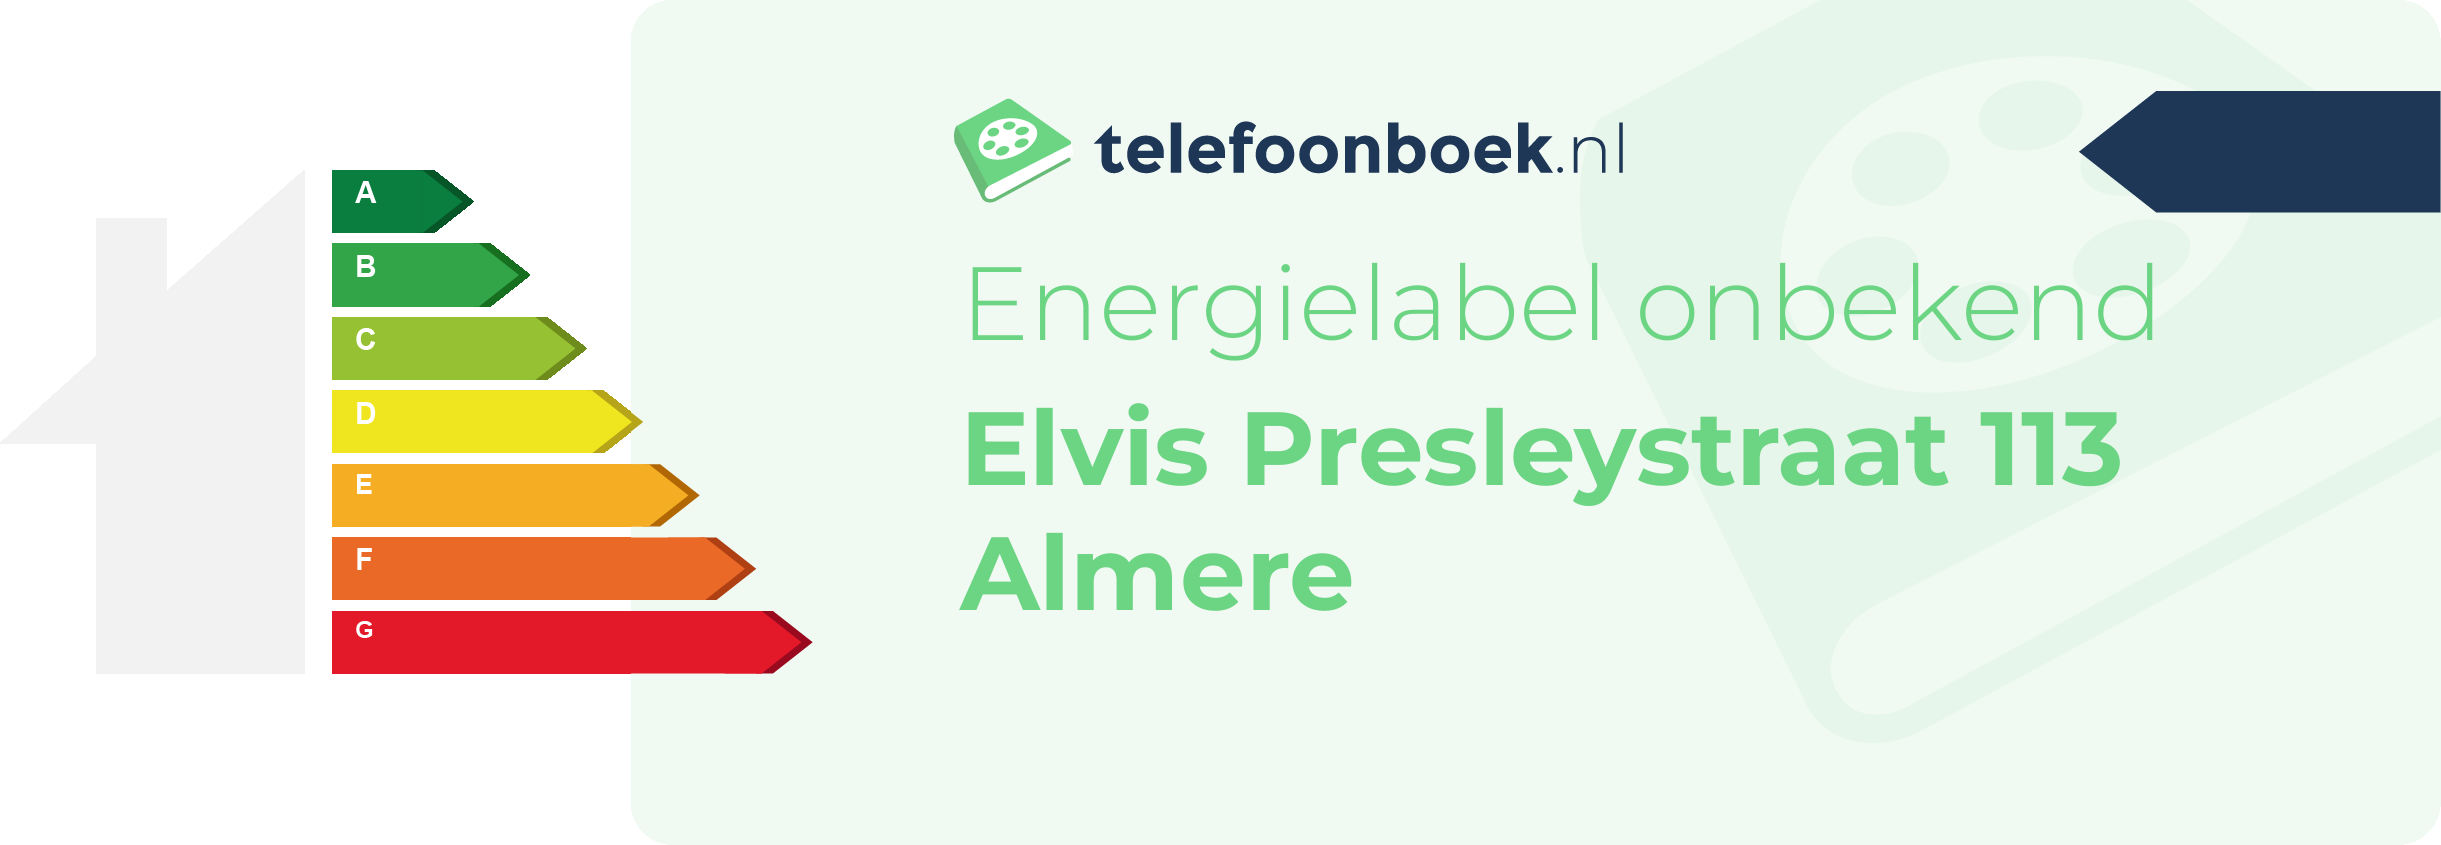 Energielabel Elvis Presleystraat 113 Almere